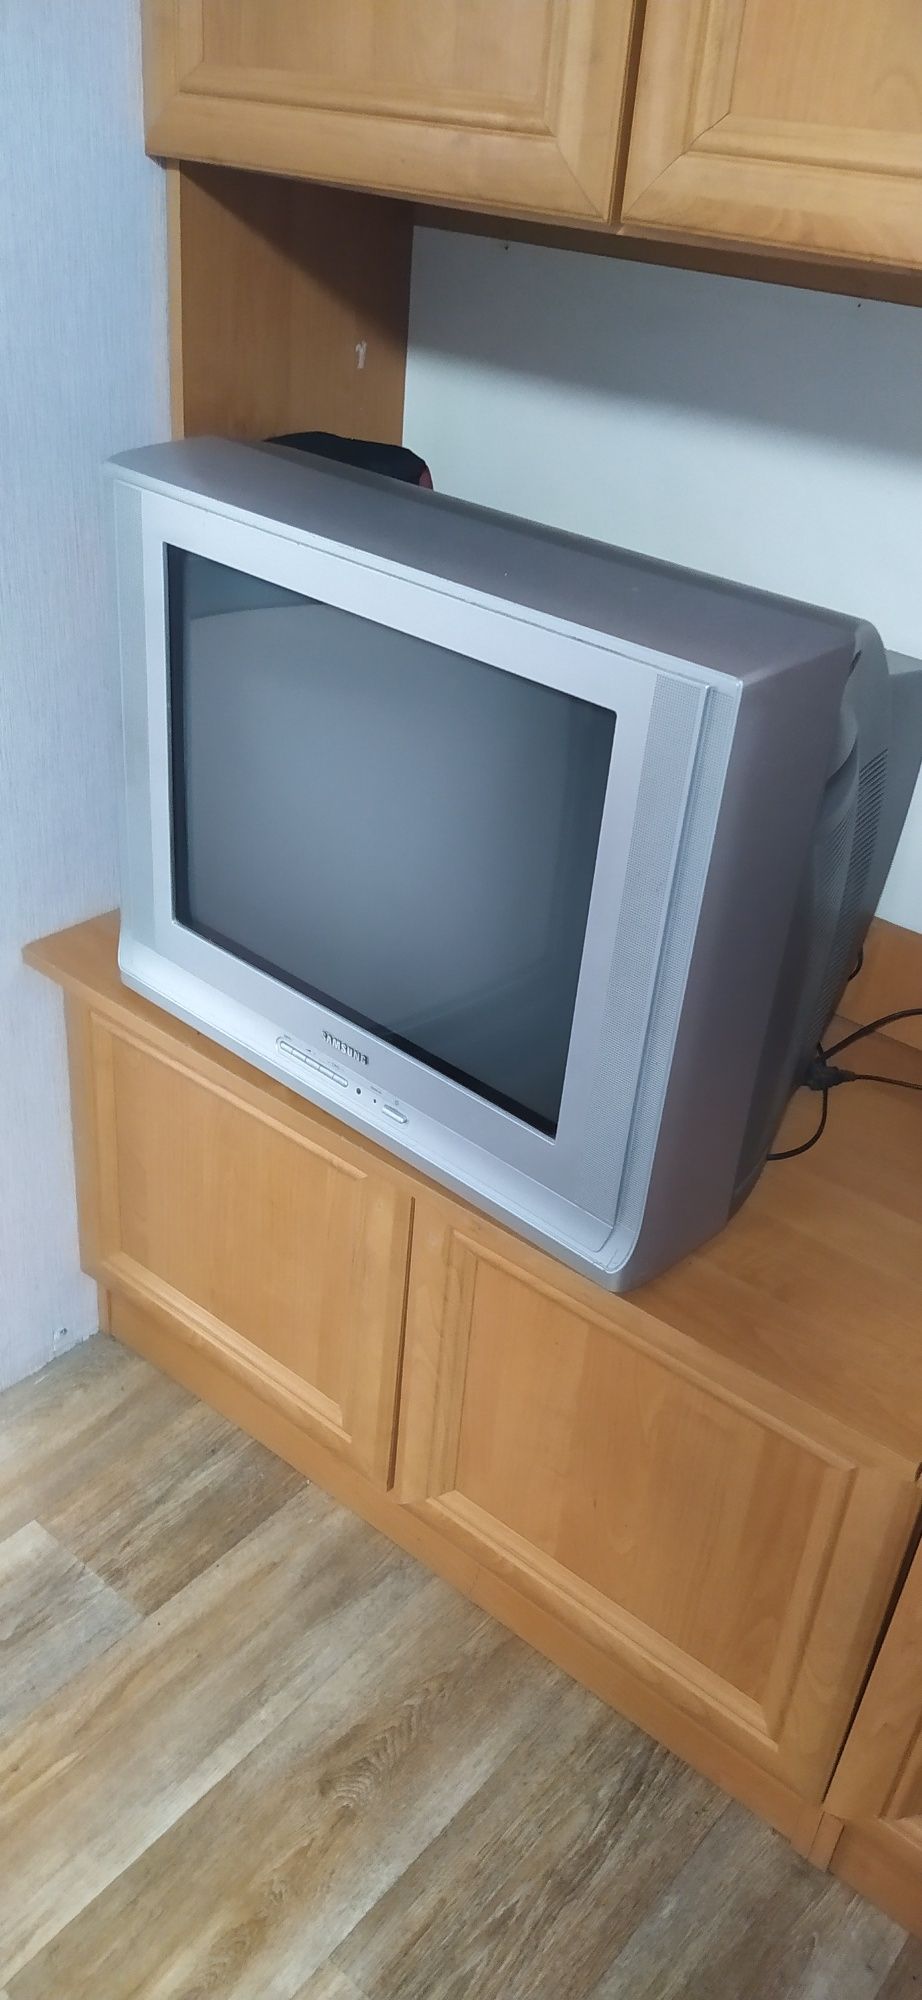 Ламповый телевизор Samsung